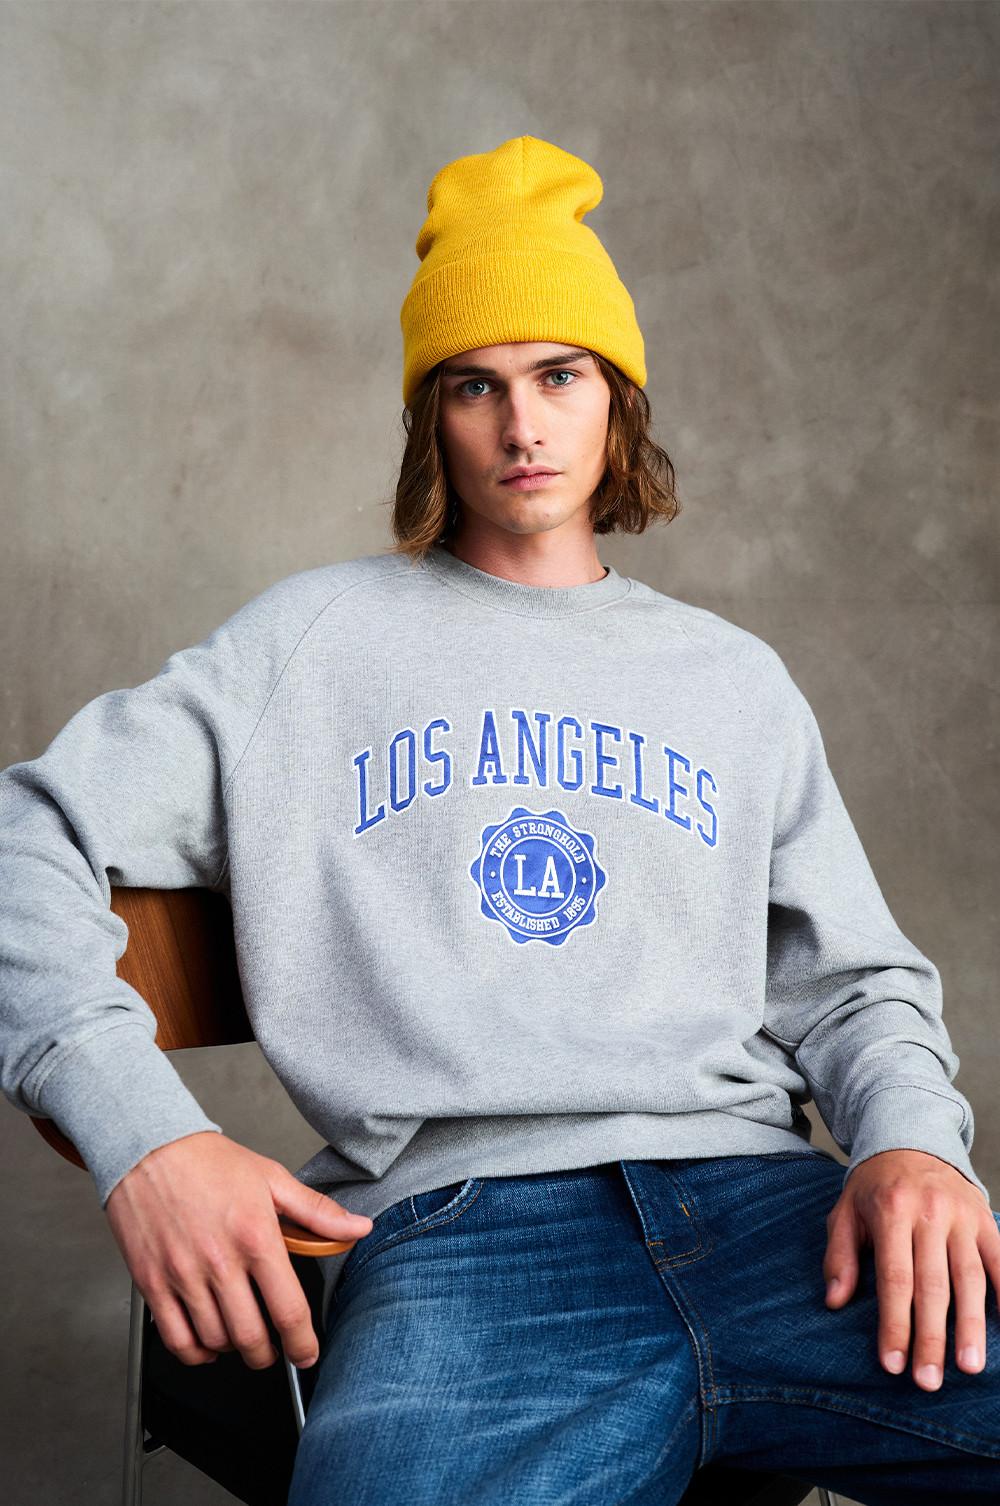 Il modello indossa una felpa grigia Los Angeles, abbinata a jeans e berretto giallo